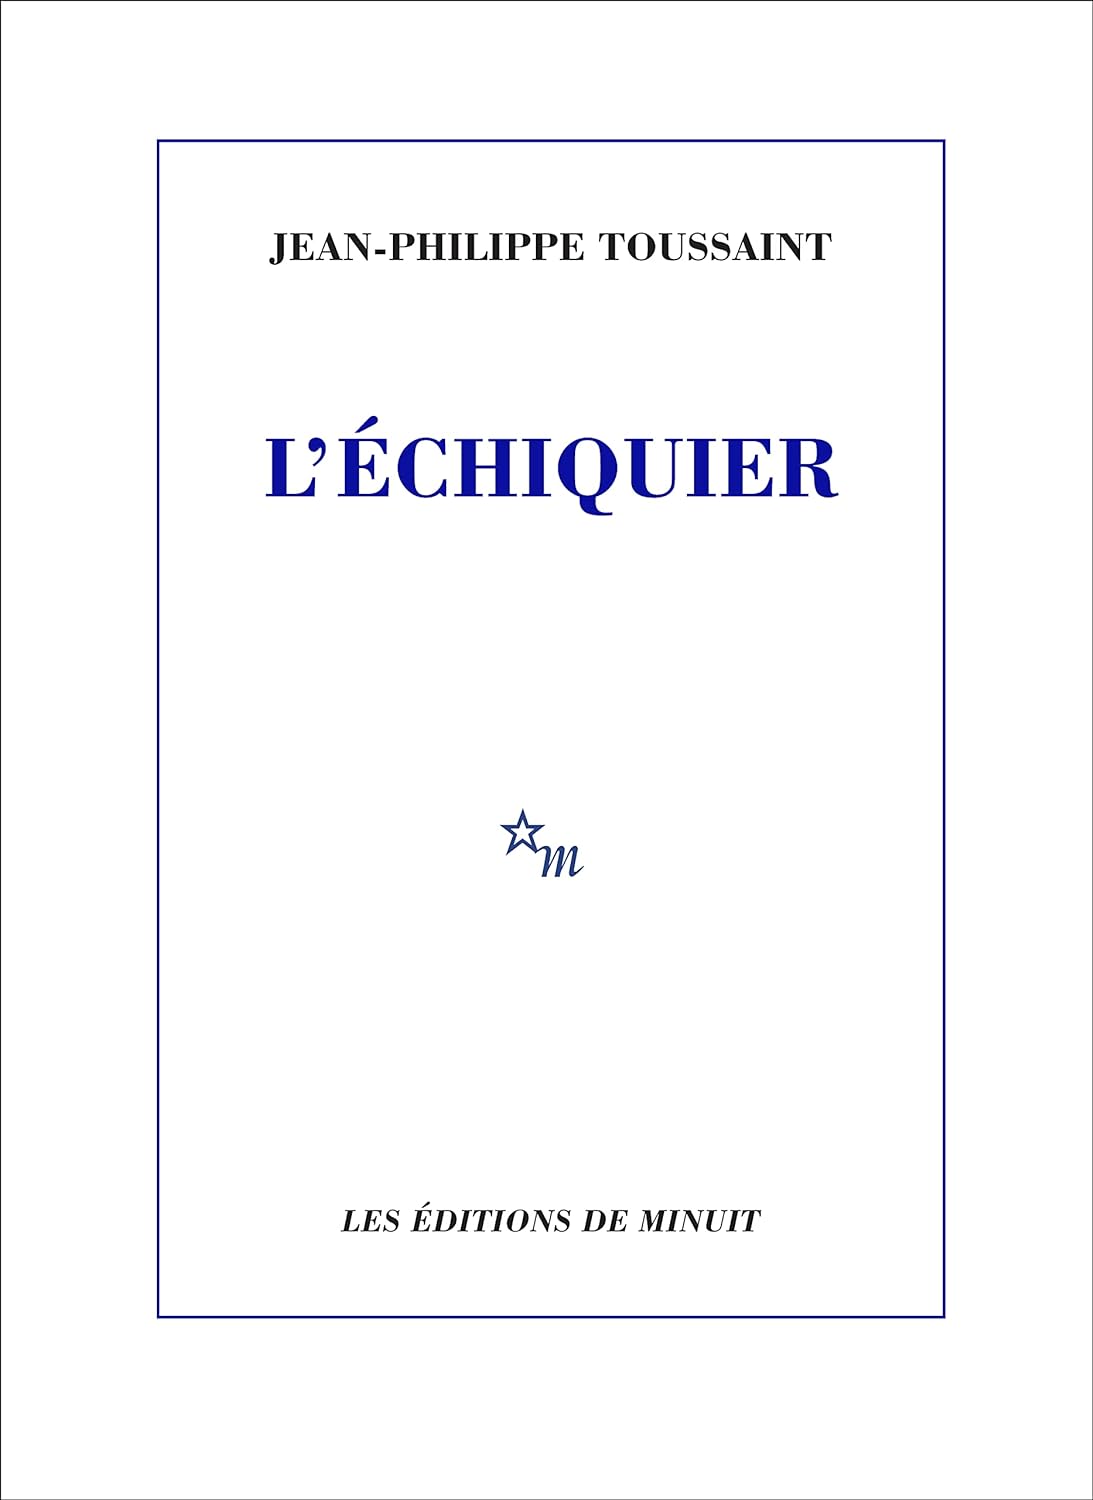 lechiquer-toussaint "L'échiquier" de Jean-Philippe Toussaint